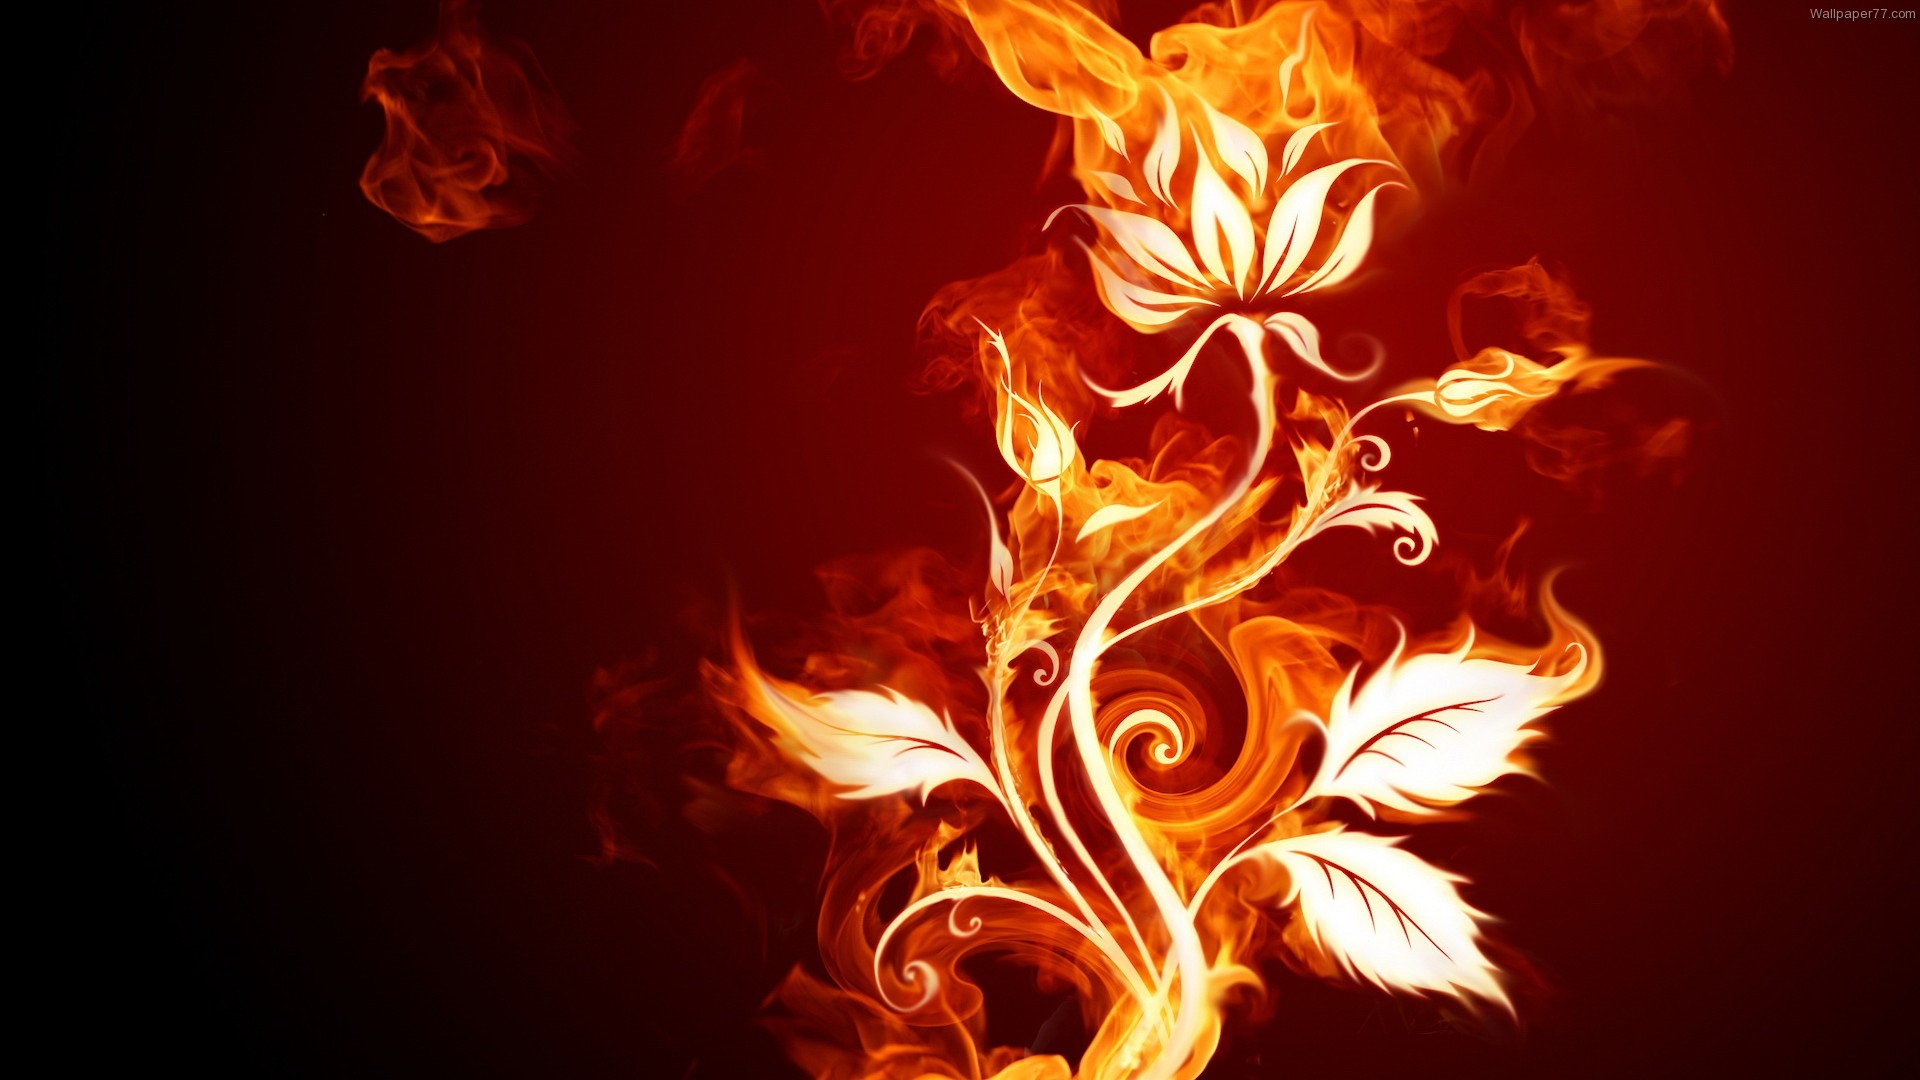 1920x1080 Wallpaper Of Fire Flower